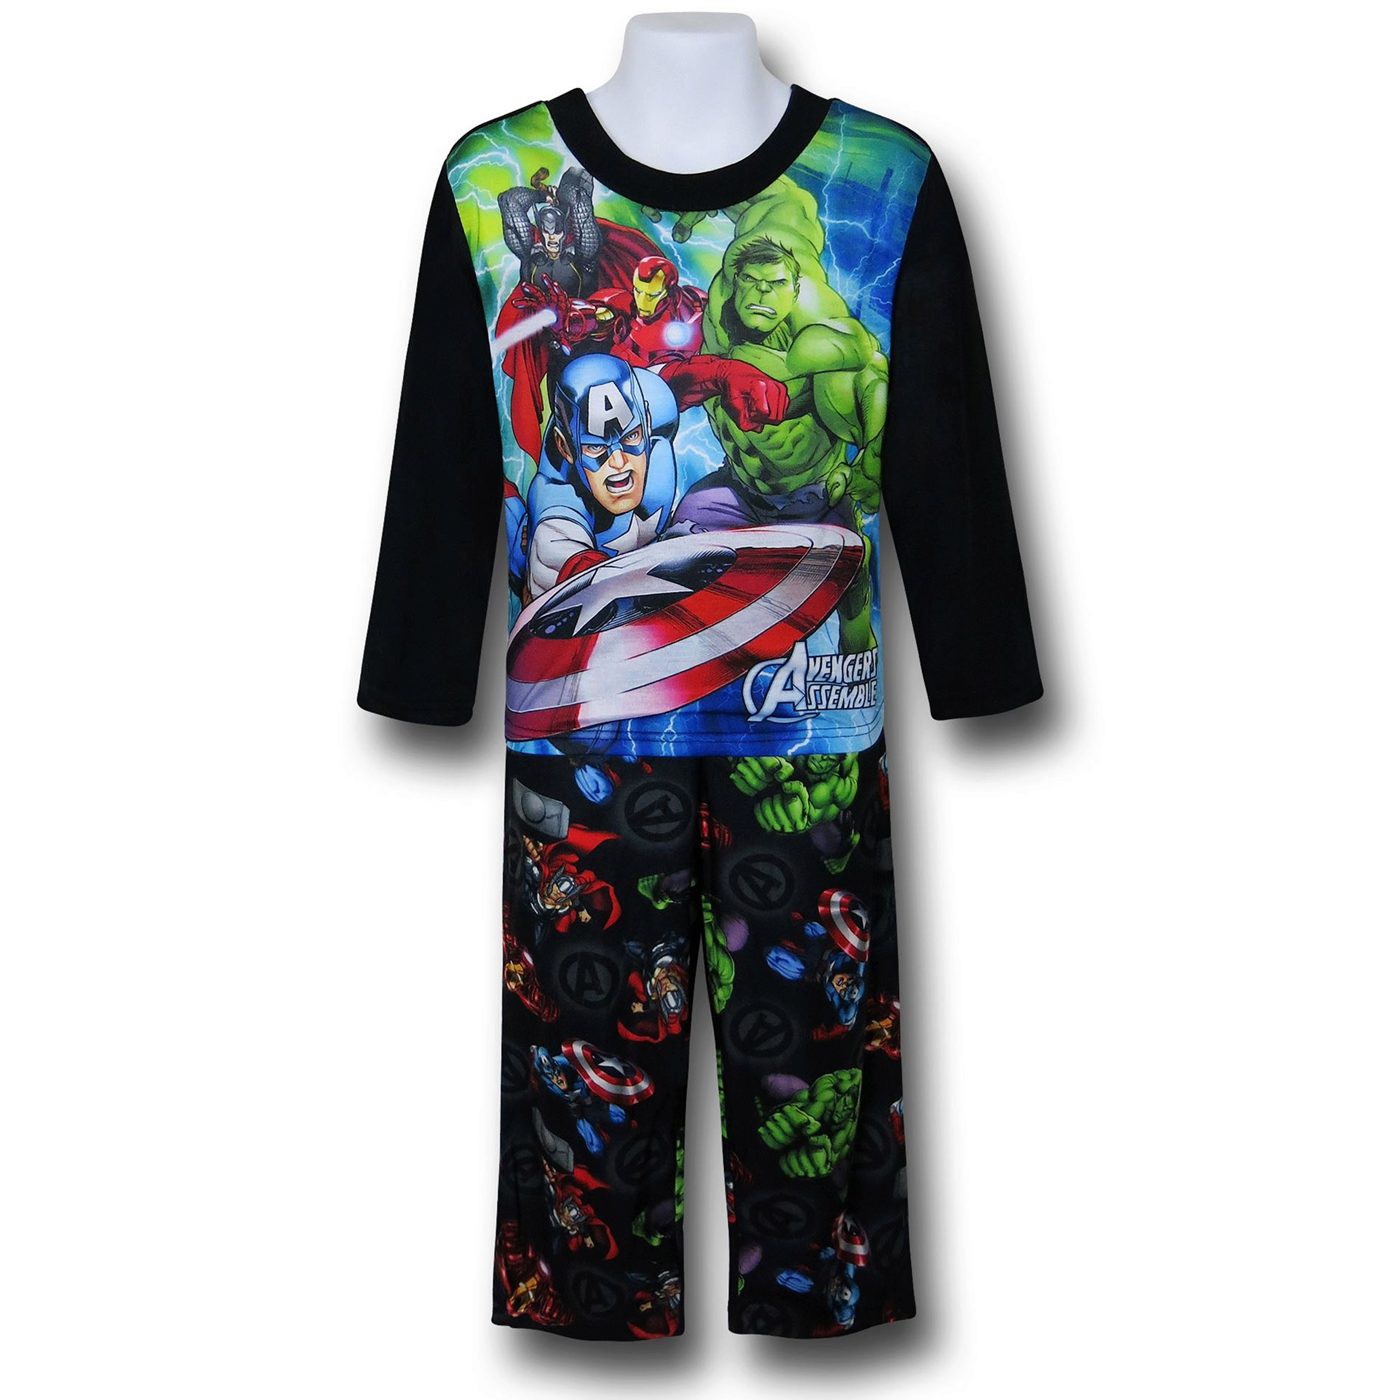 Avengers Shield Throw 2-Piece Kids Pajama Set